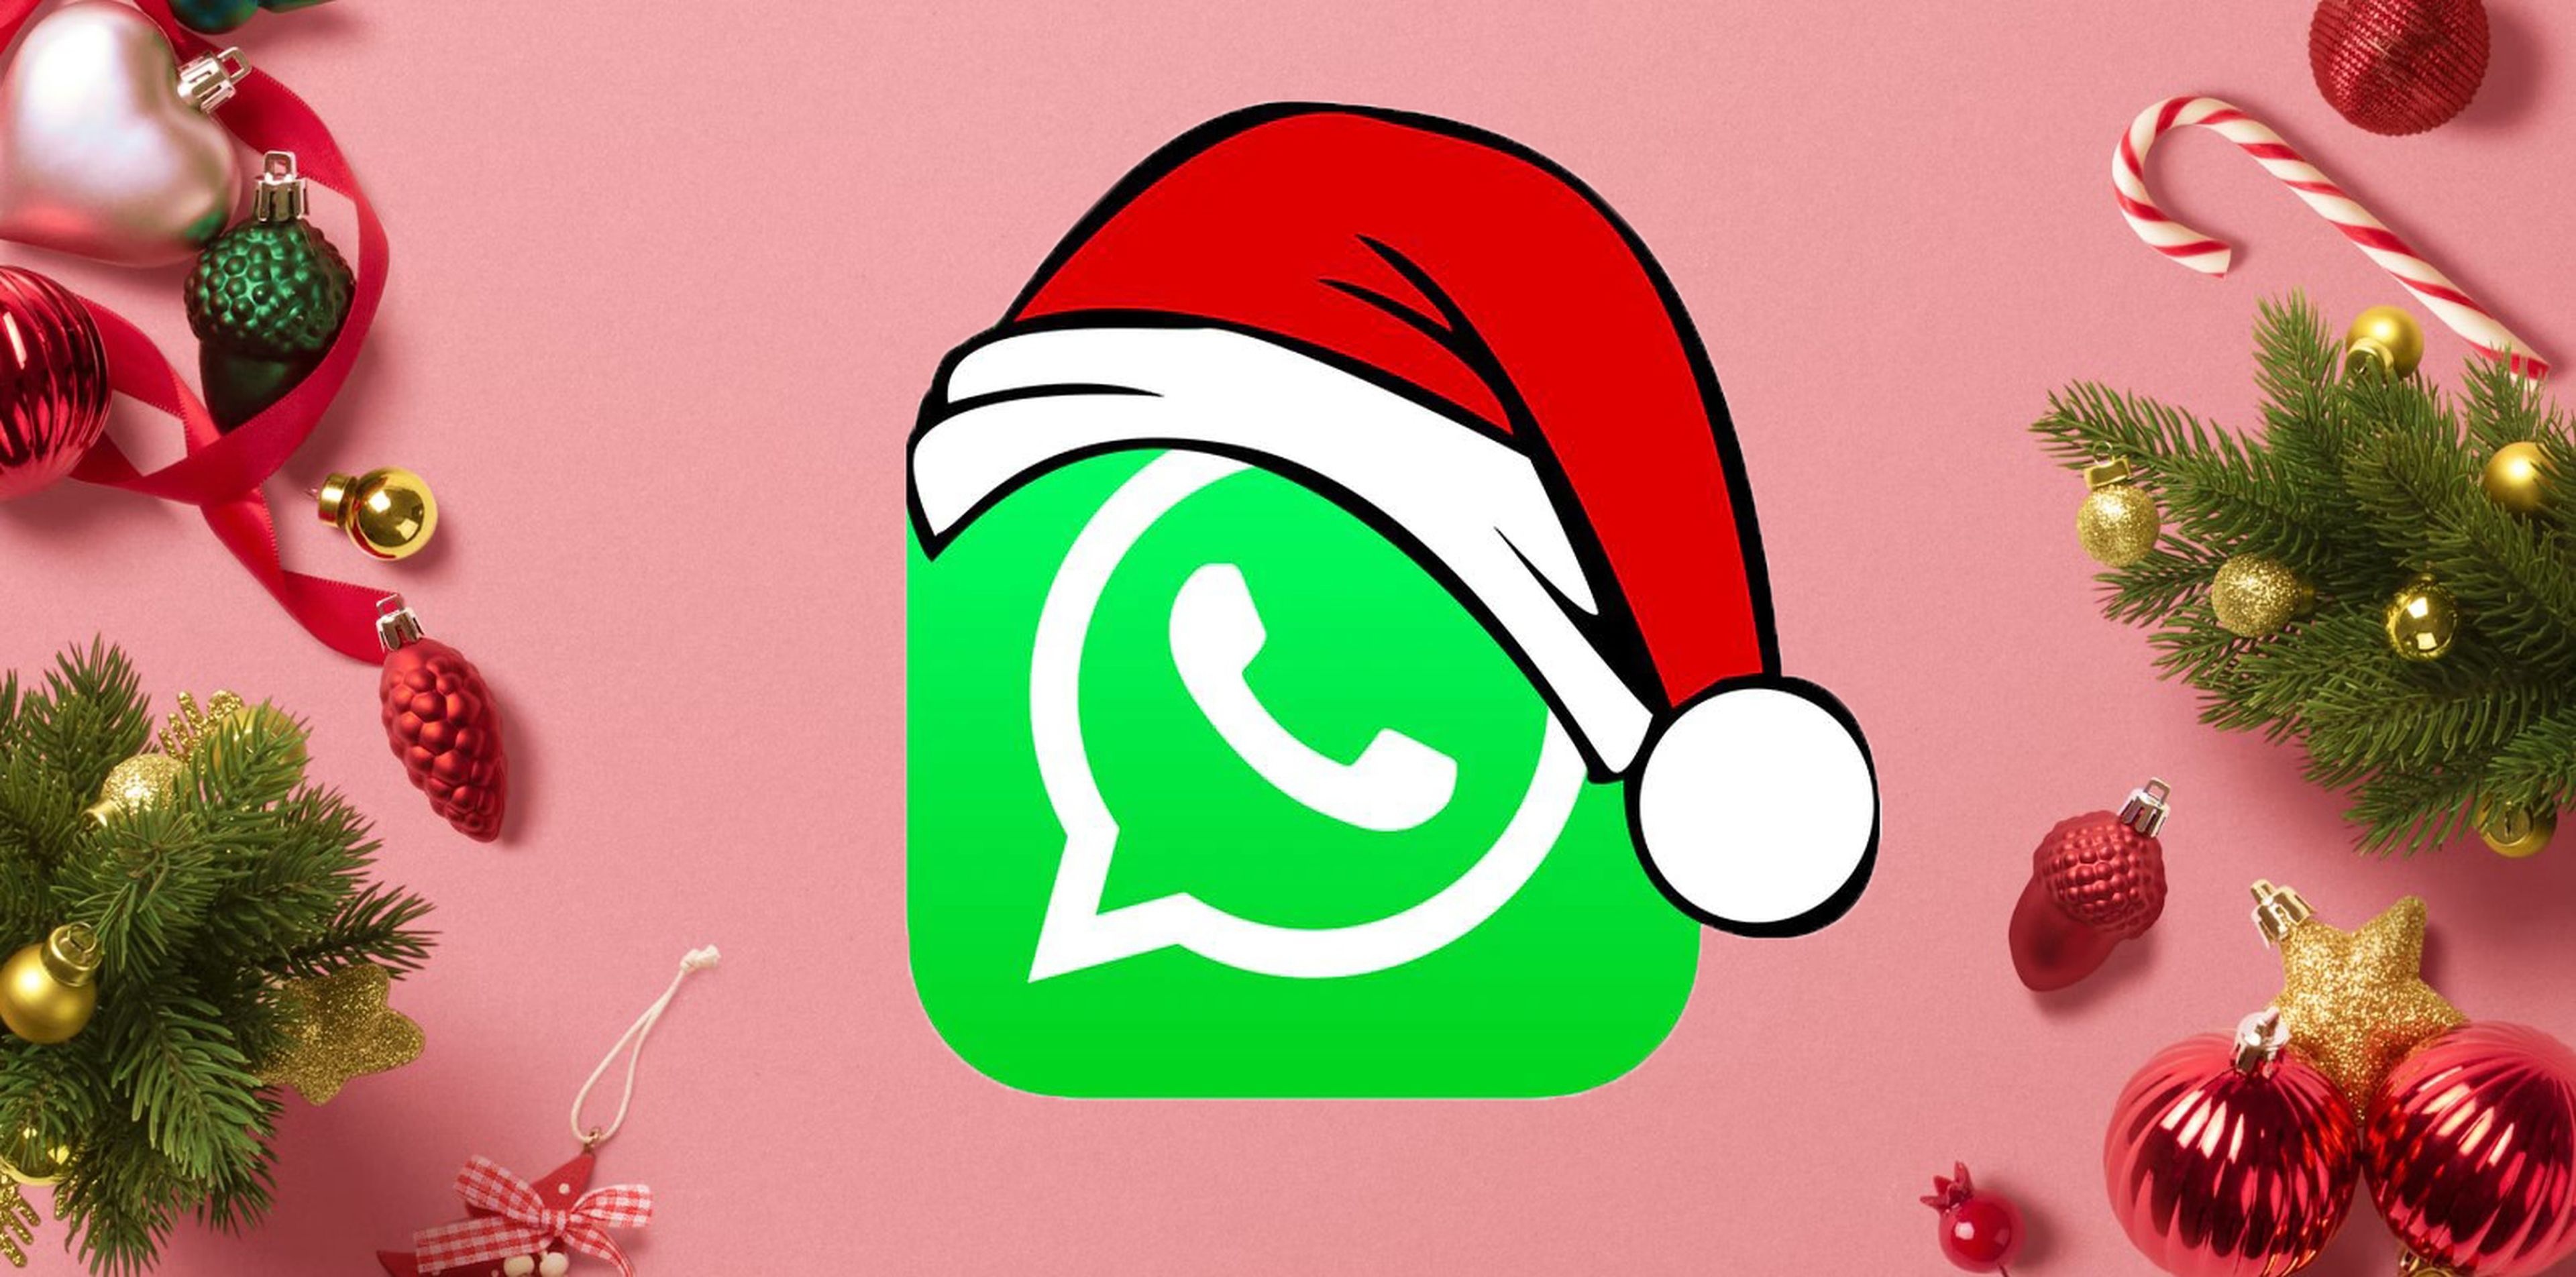 Frases cortas para tus felicitaciones de Navidad 2022 por WhatsApp |  Computer Hoy